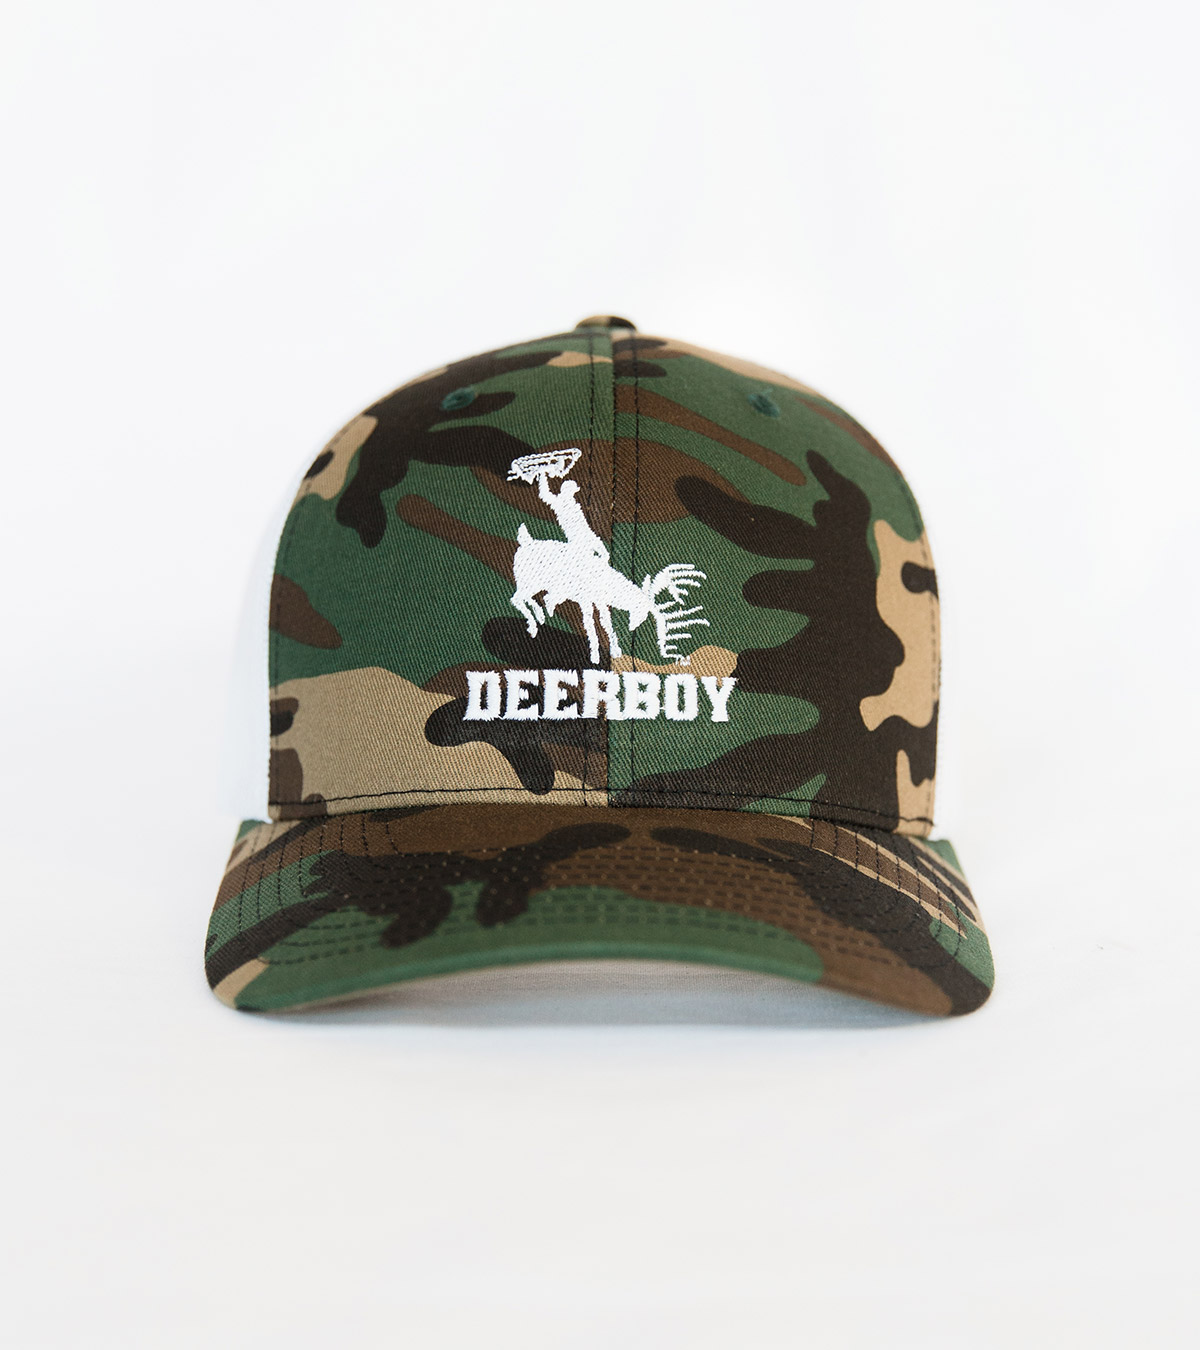 Deerboy Signature Cap In Camo/White